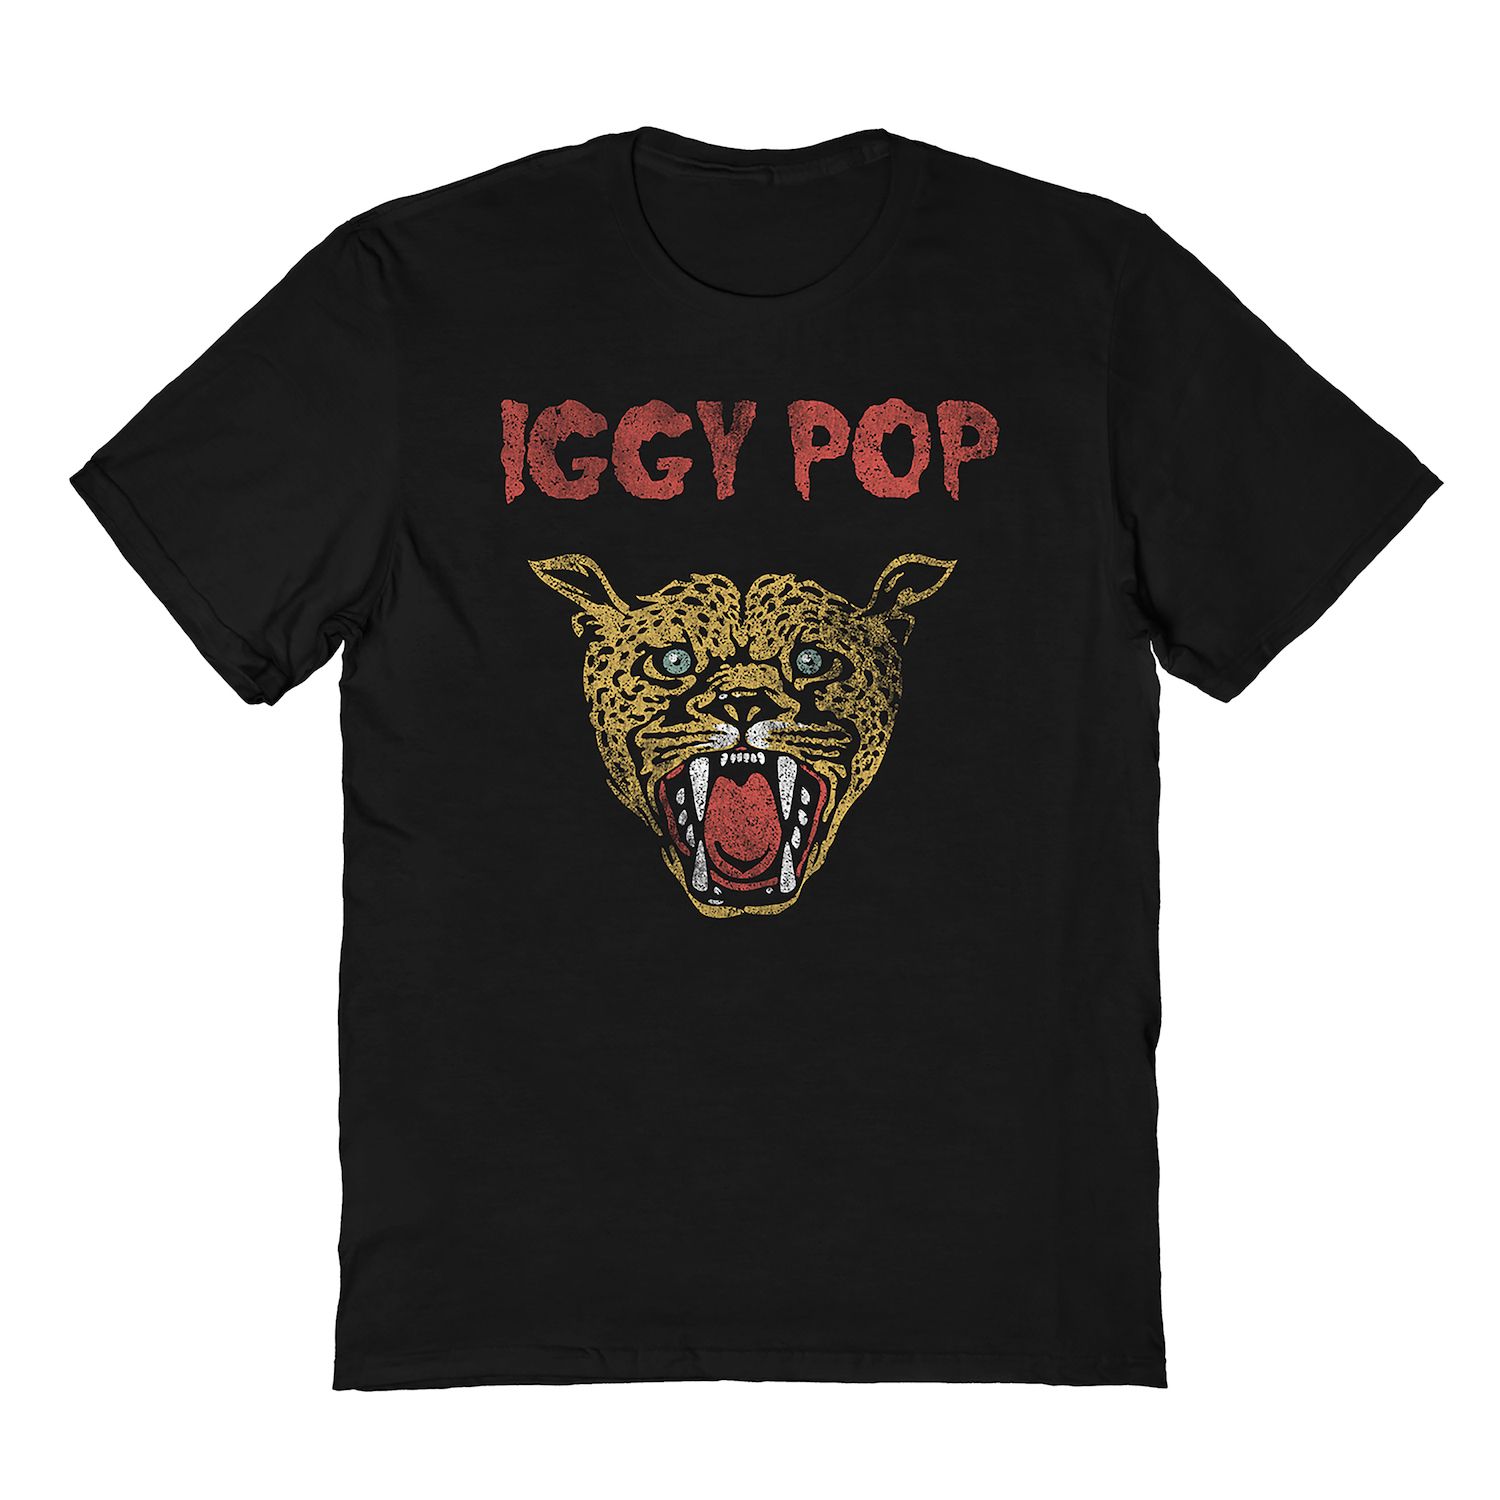 мужская футболка с принтом хипстерская футболка iggy and the stooges iggy pop черная мужская футболка с принтом гаража панк рок куклы нью йорка Мужская футболка Iggy Pop Licensed Character